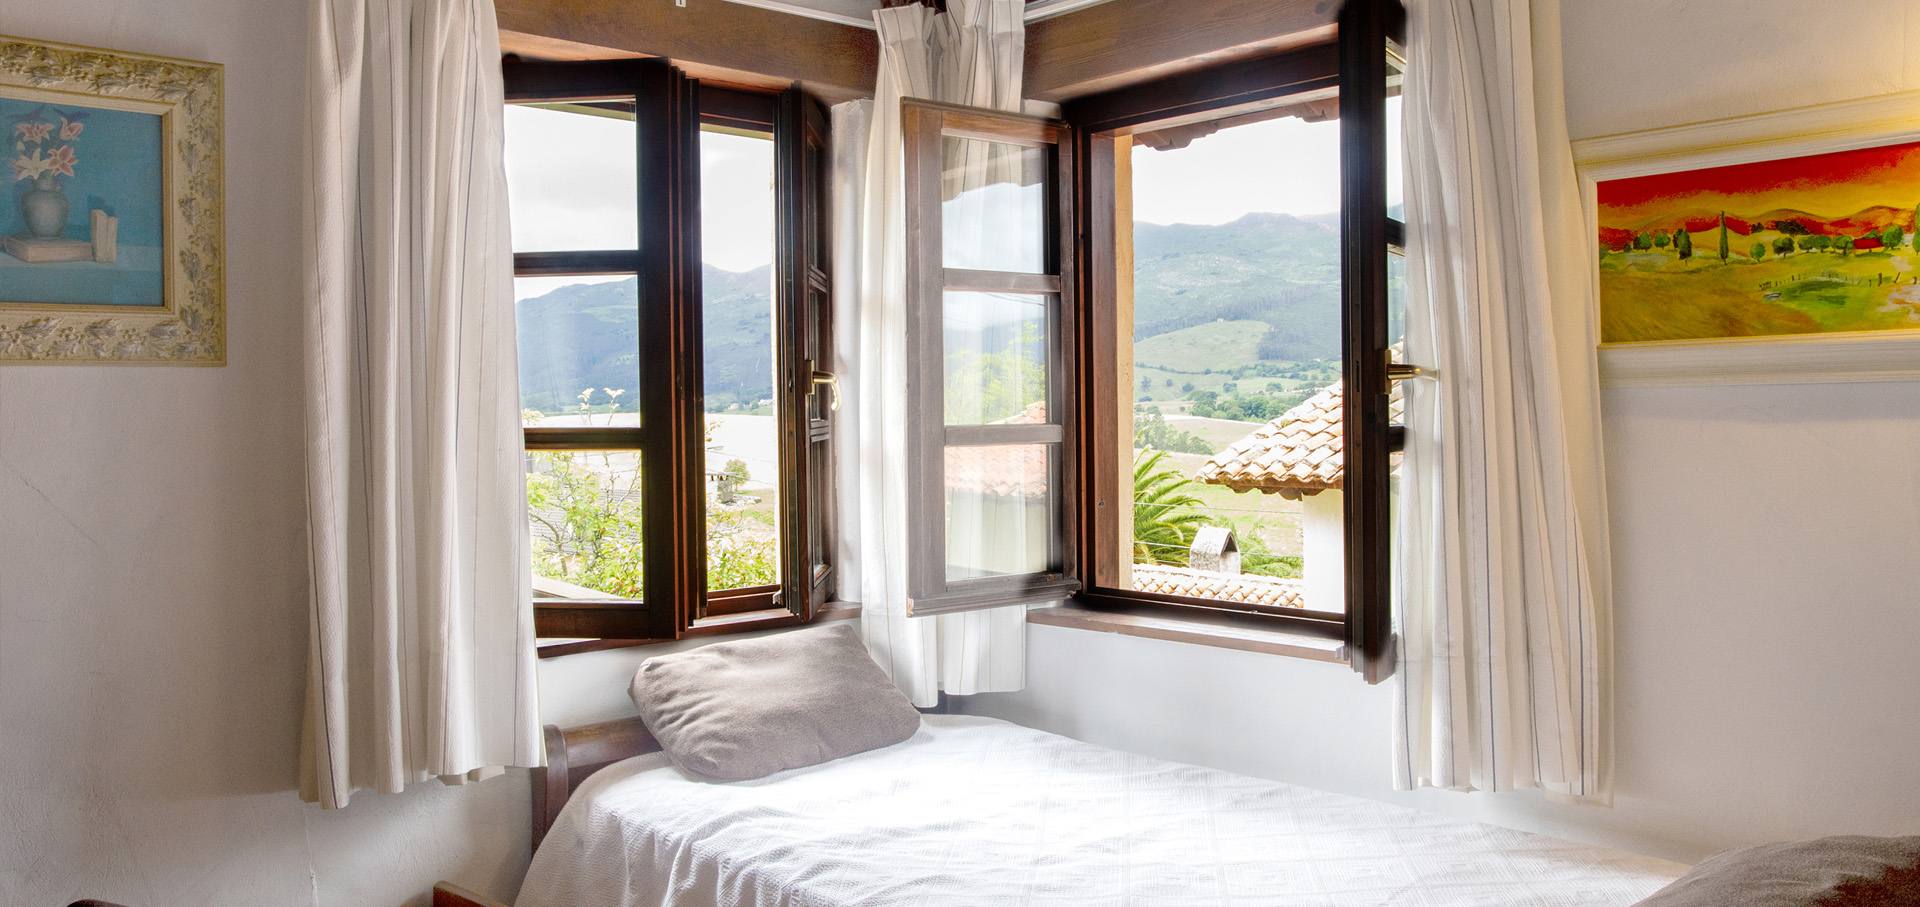 hotel rural asturias encanto habitacion familiar papon 8 cab 1